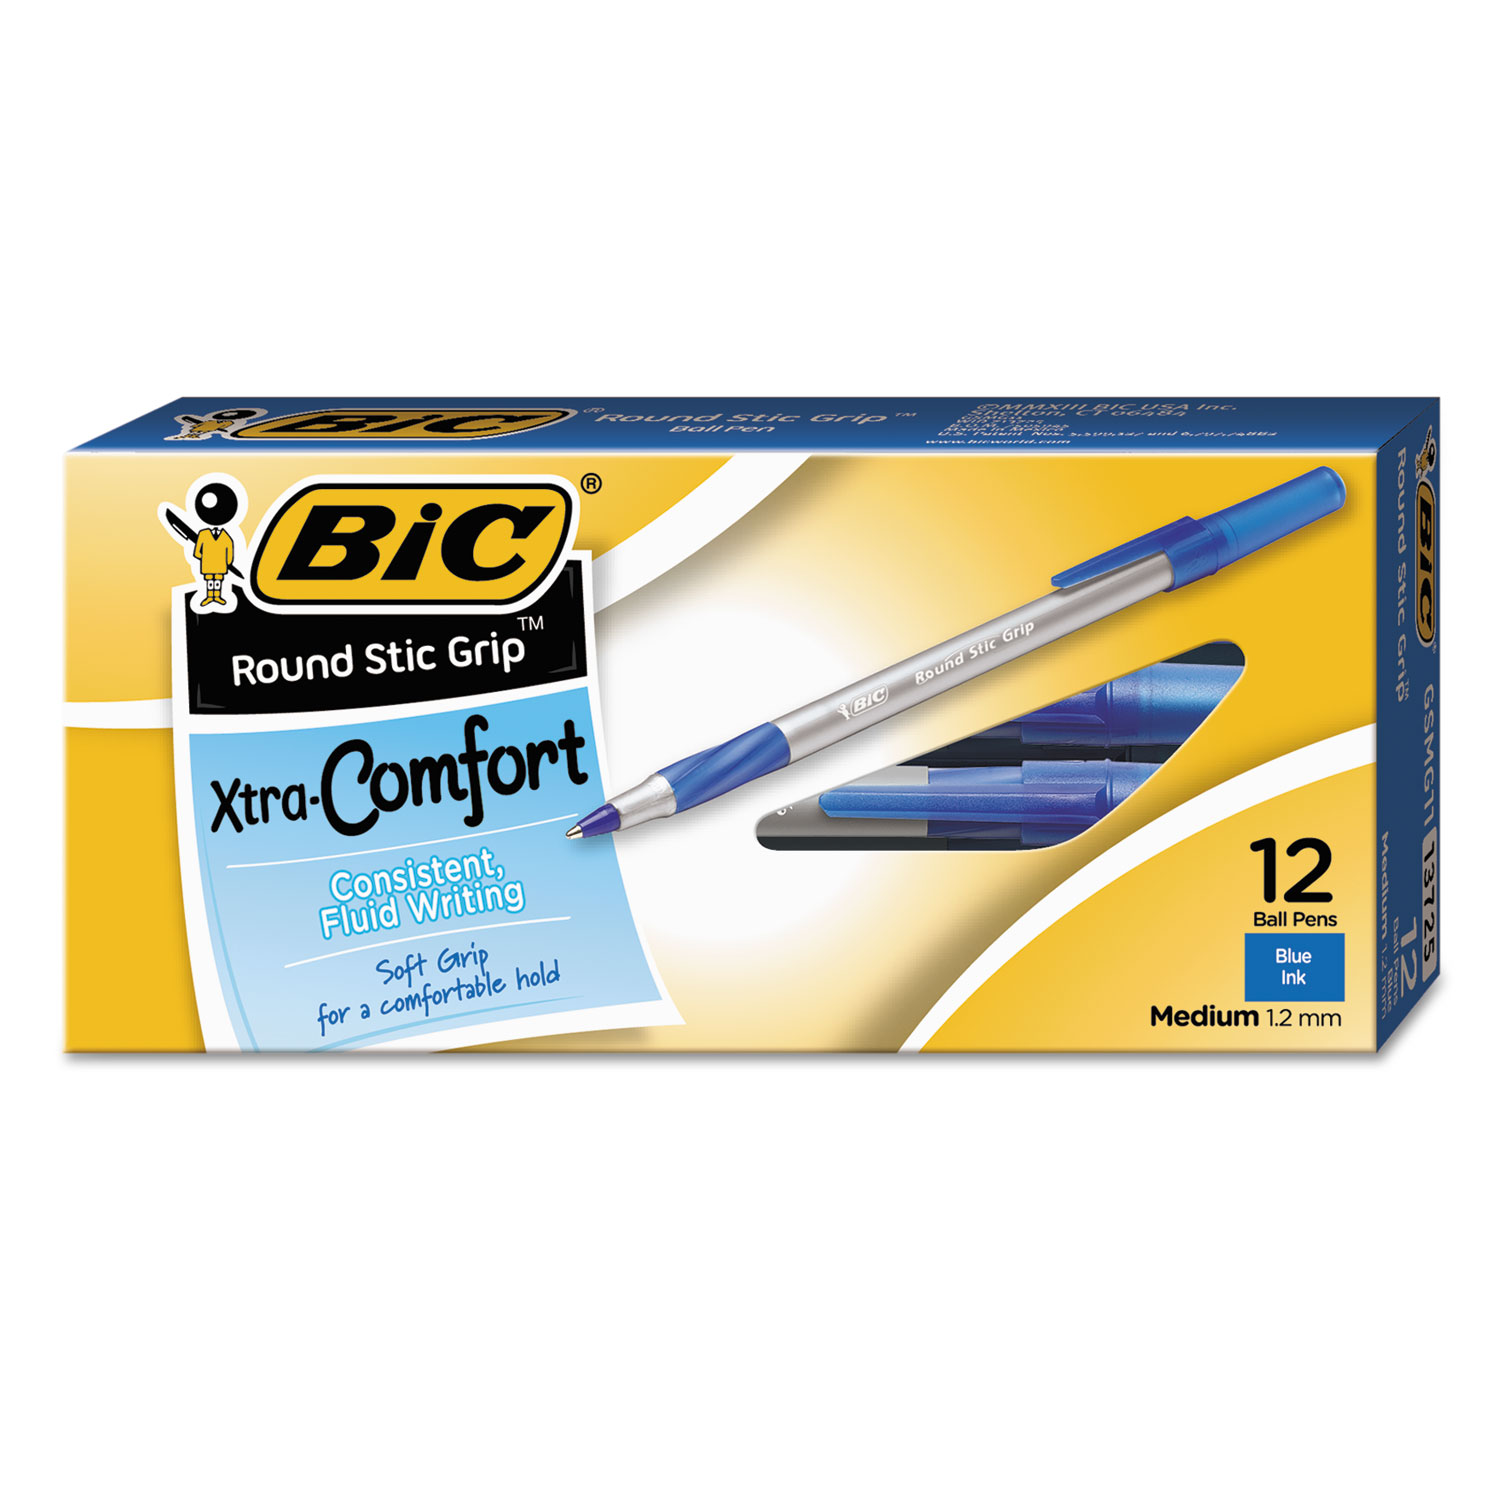 Round Stic Grip Xtra Comfort Ballpoint Pen, Blue Ink, 1.2mm, Medium, Dozen